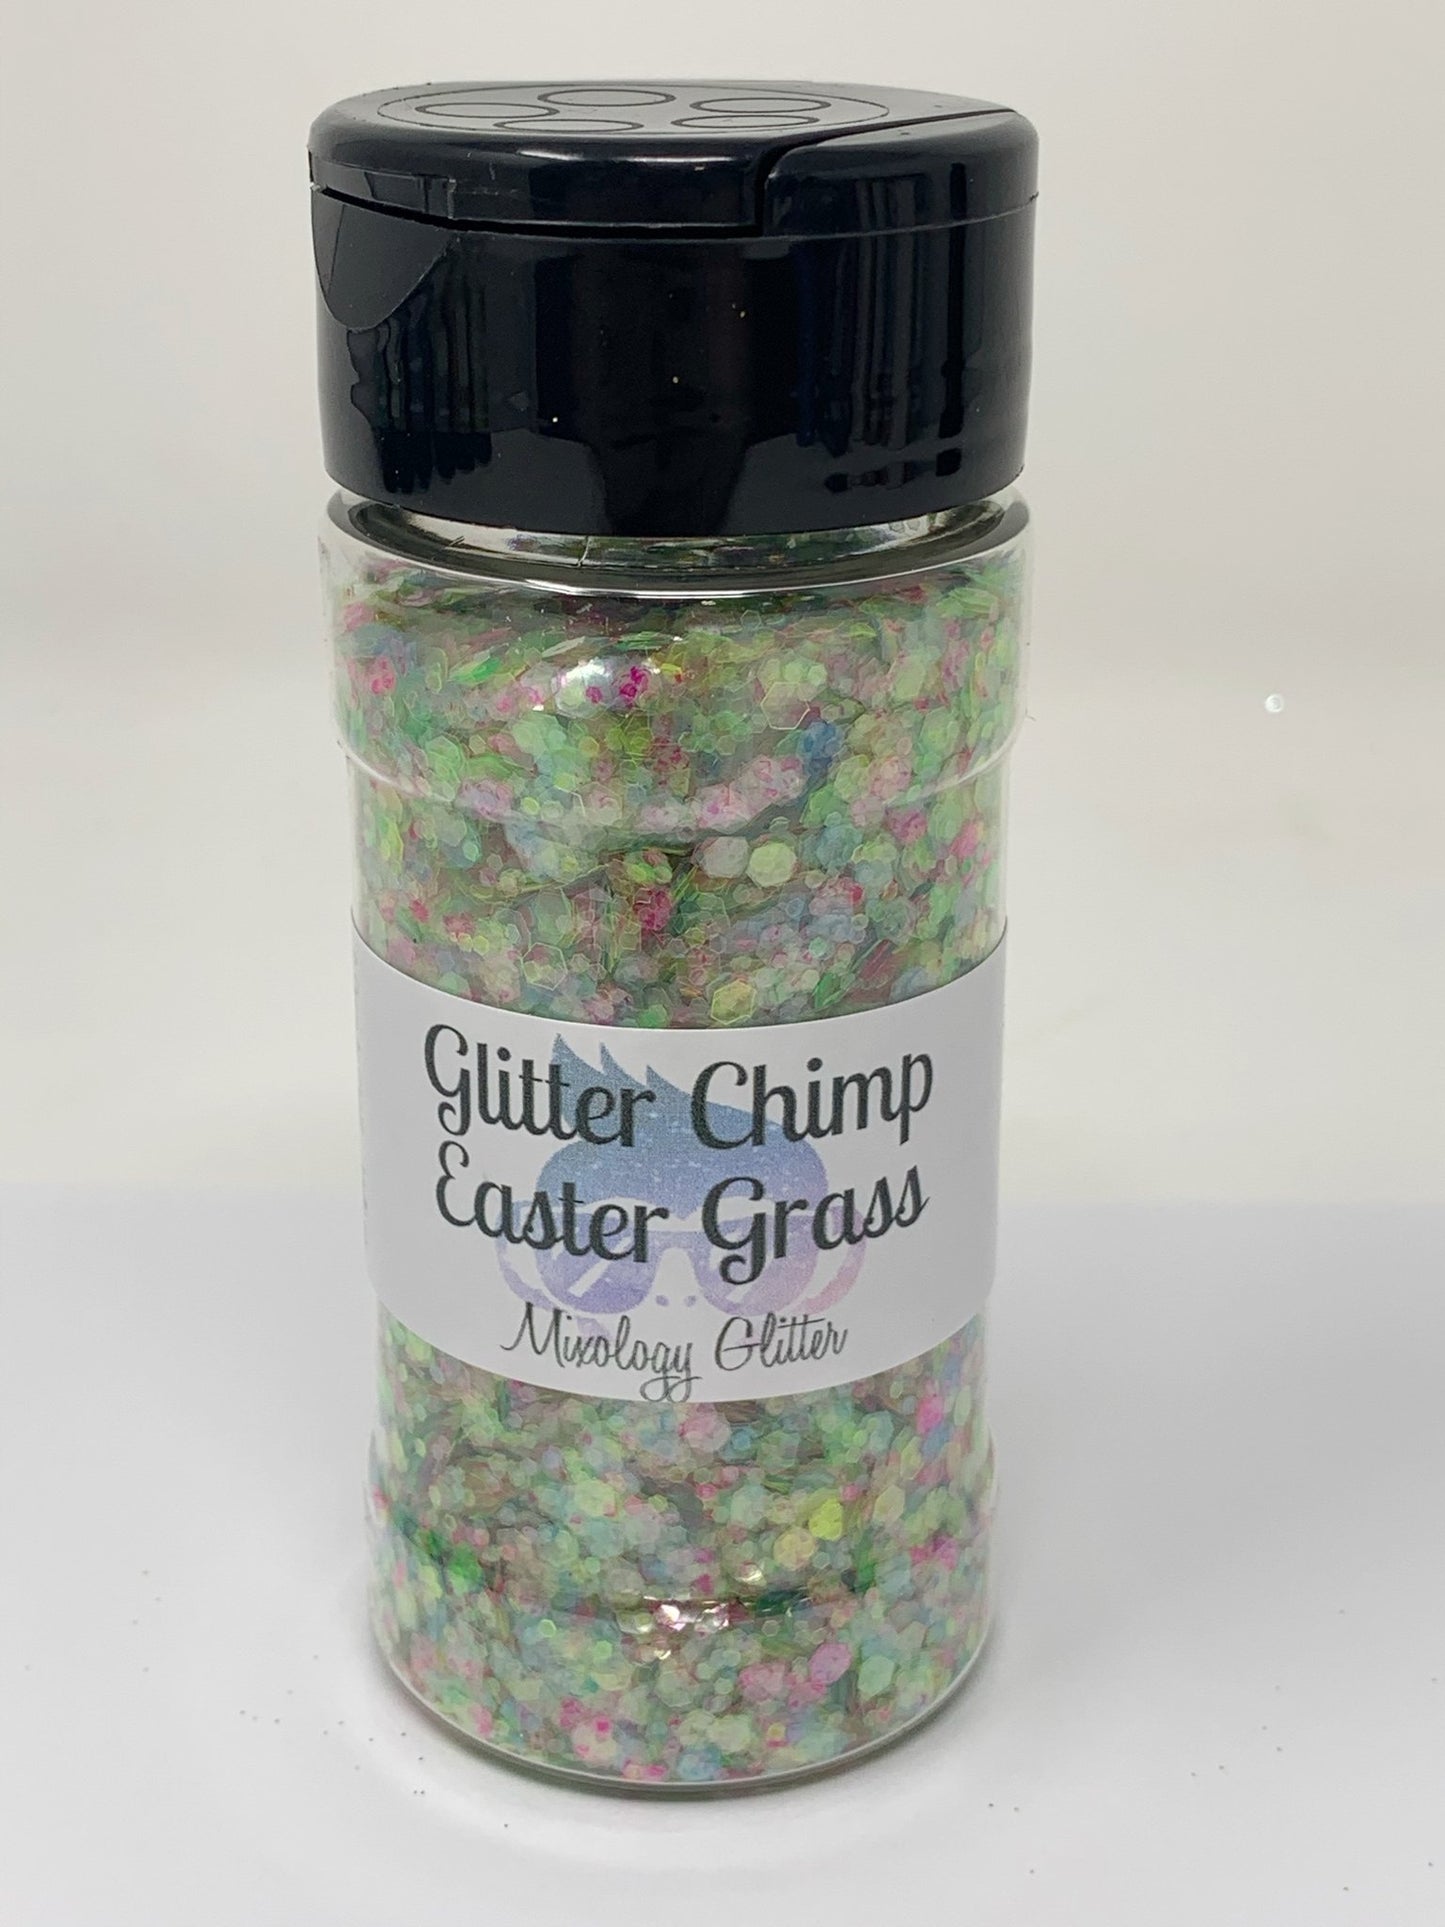 Easter Grass Mixology Glitter